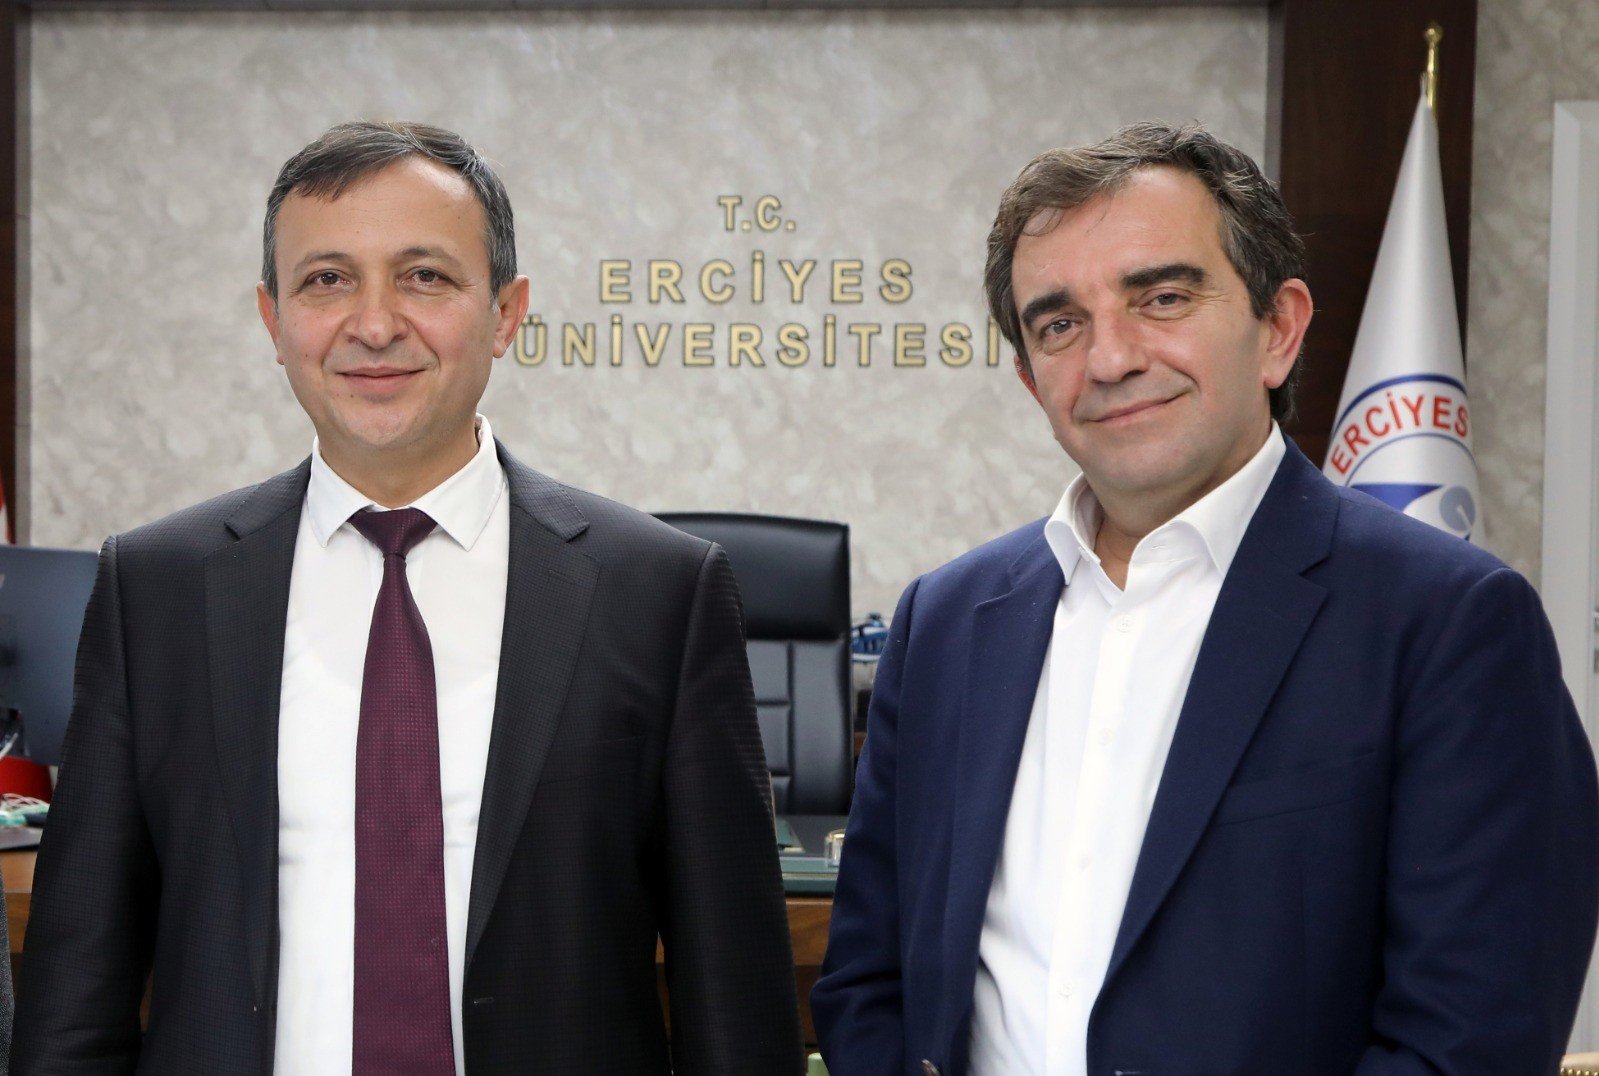 TURKOVAC'ı geliştiren Prof. Dr. Özdarendeli'ye Türkiye Bilimler Akademisinden ödül